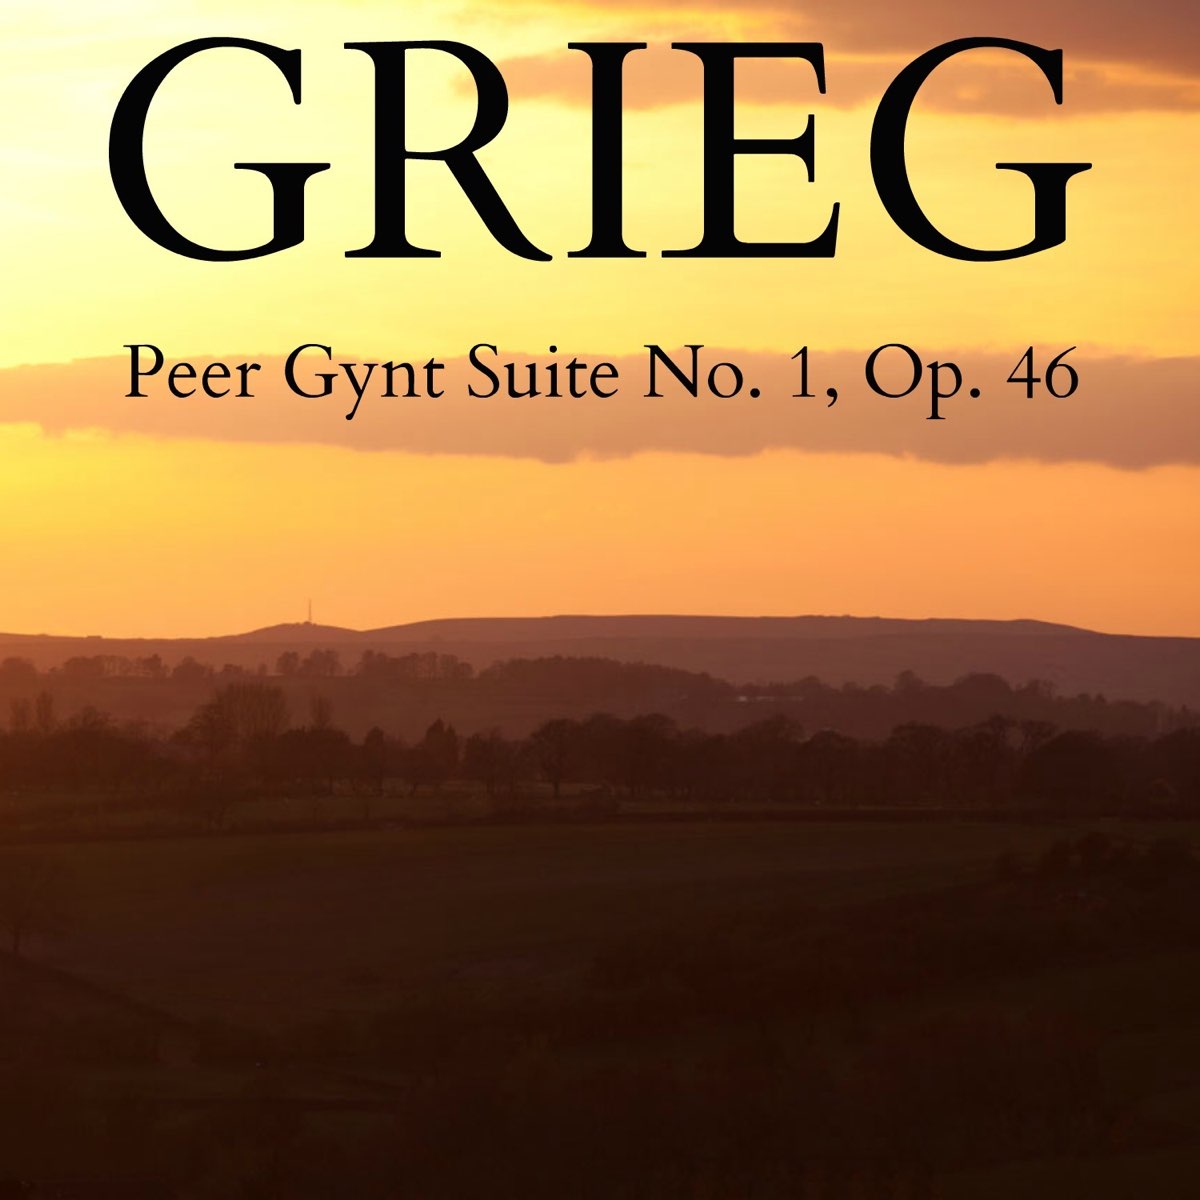 Peer gynt op 46. Grieg: peer Gynt Suite no. 1, in the Hall of the Mountain King. Peer Gynt Suite no 1 op 46 in the Hall. Peer Gynt Suite no. 1, op. 46. Peer Gynt Suite no 1 op 46 no 4.